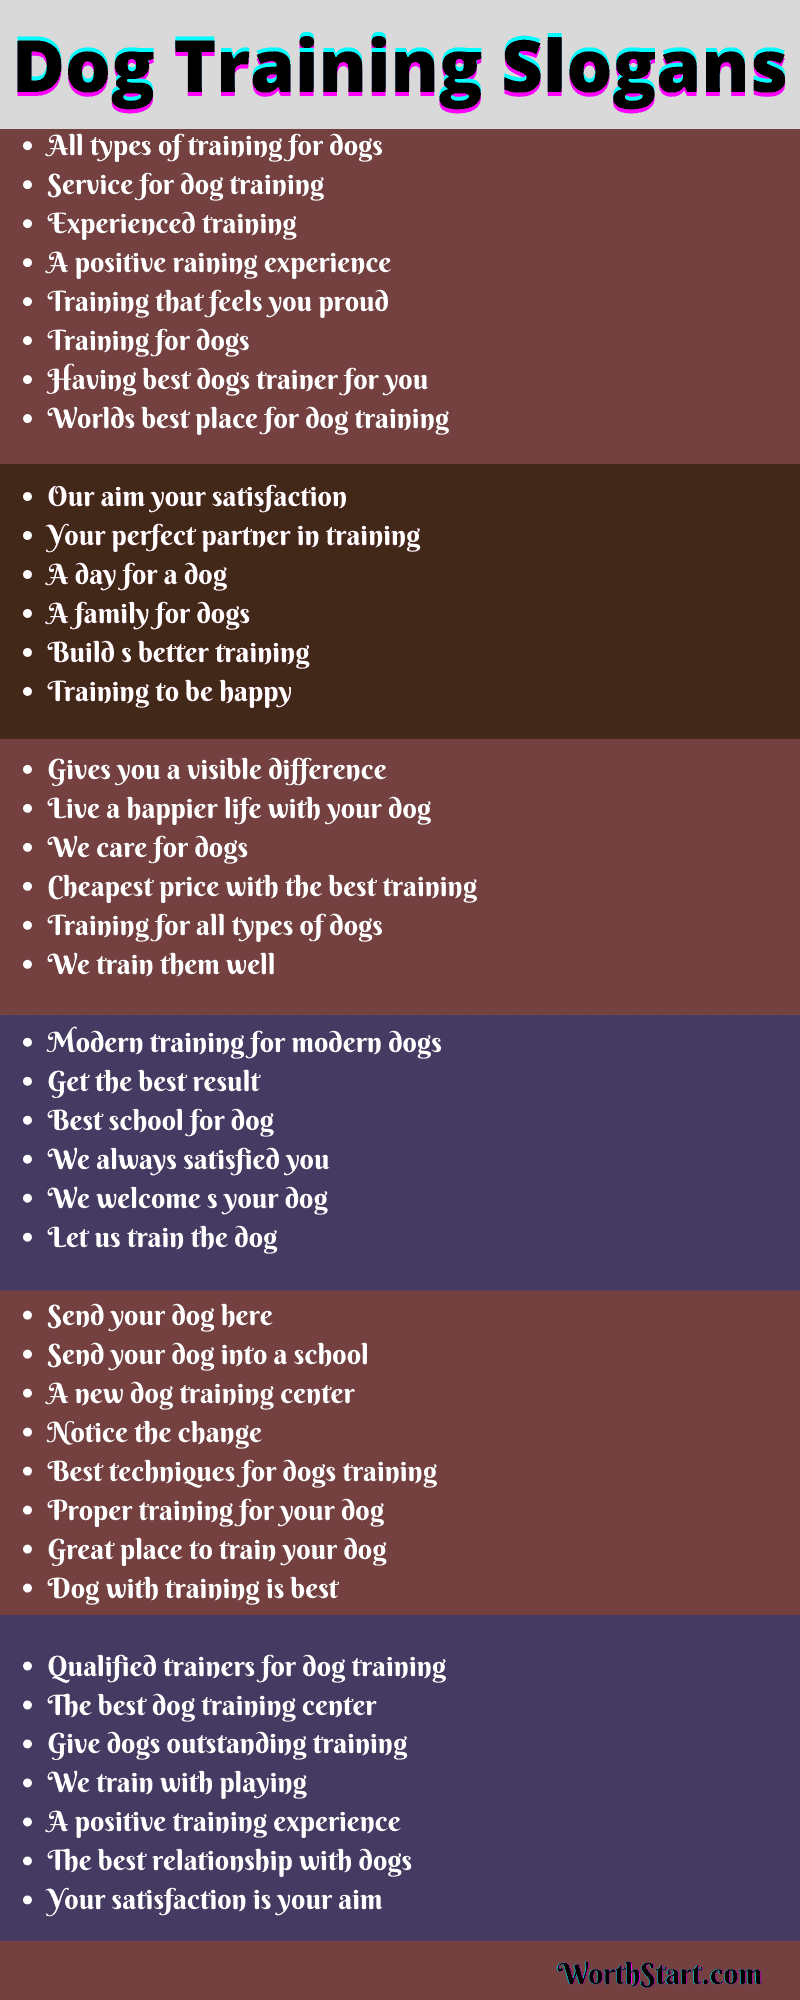 Dog Training Slogans